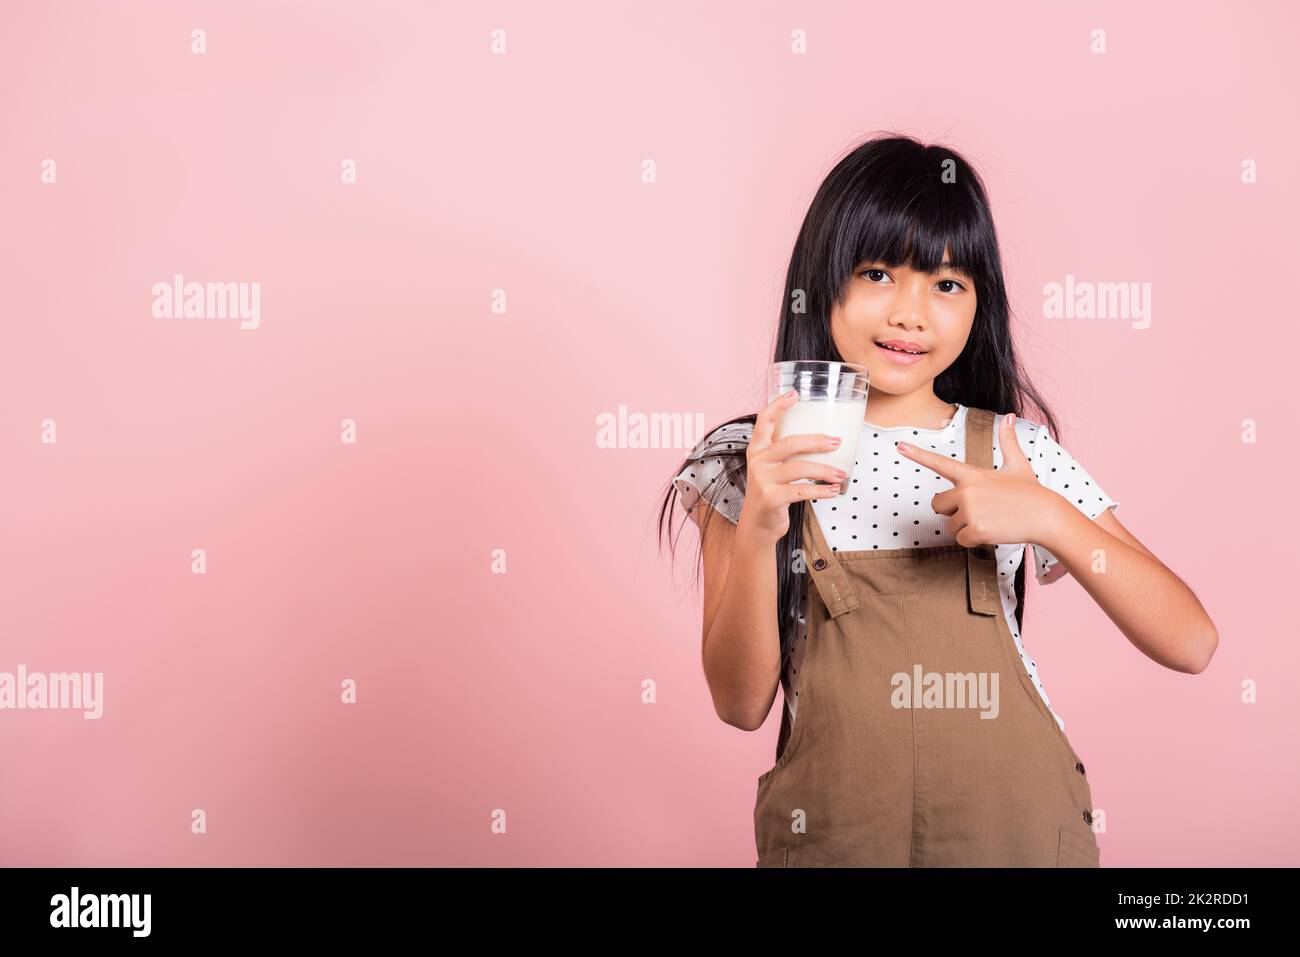 Petit enfant asiatique 10 ans sourire tenir le verre de lait boire du lait blanc et le doigt pointant Banque D'Images